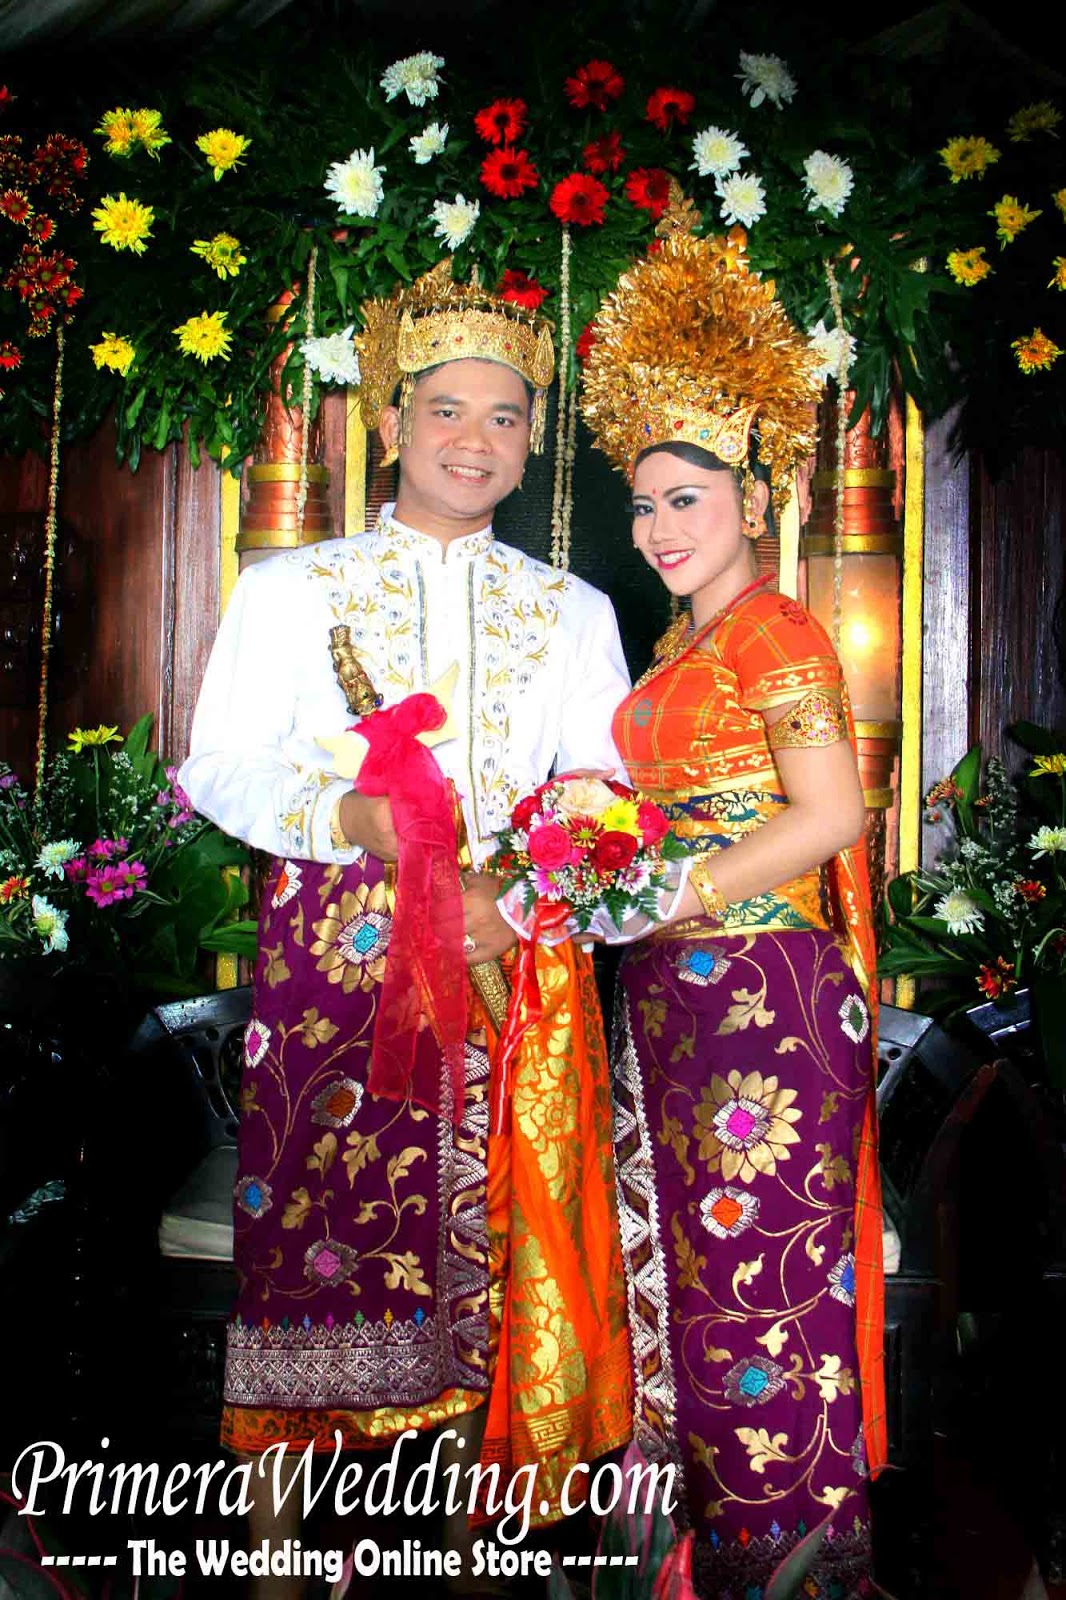  Pakaian Pengantin Adat Bali Modifikasi Inspirasi Pernikahan